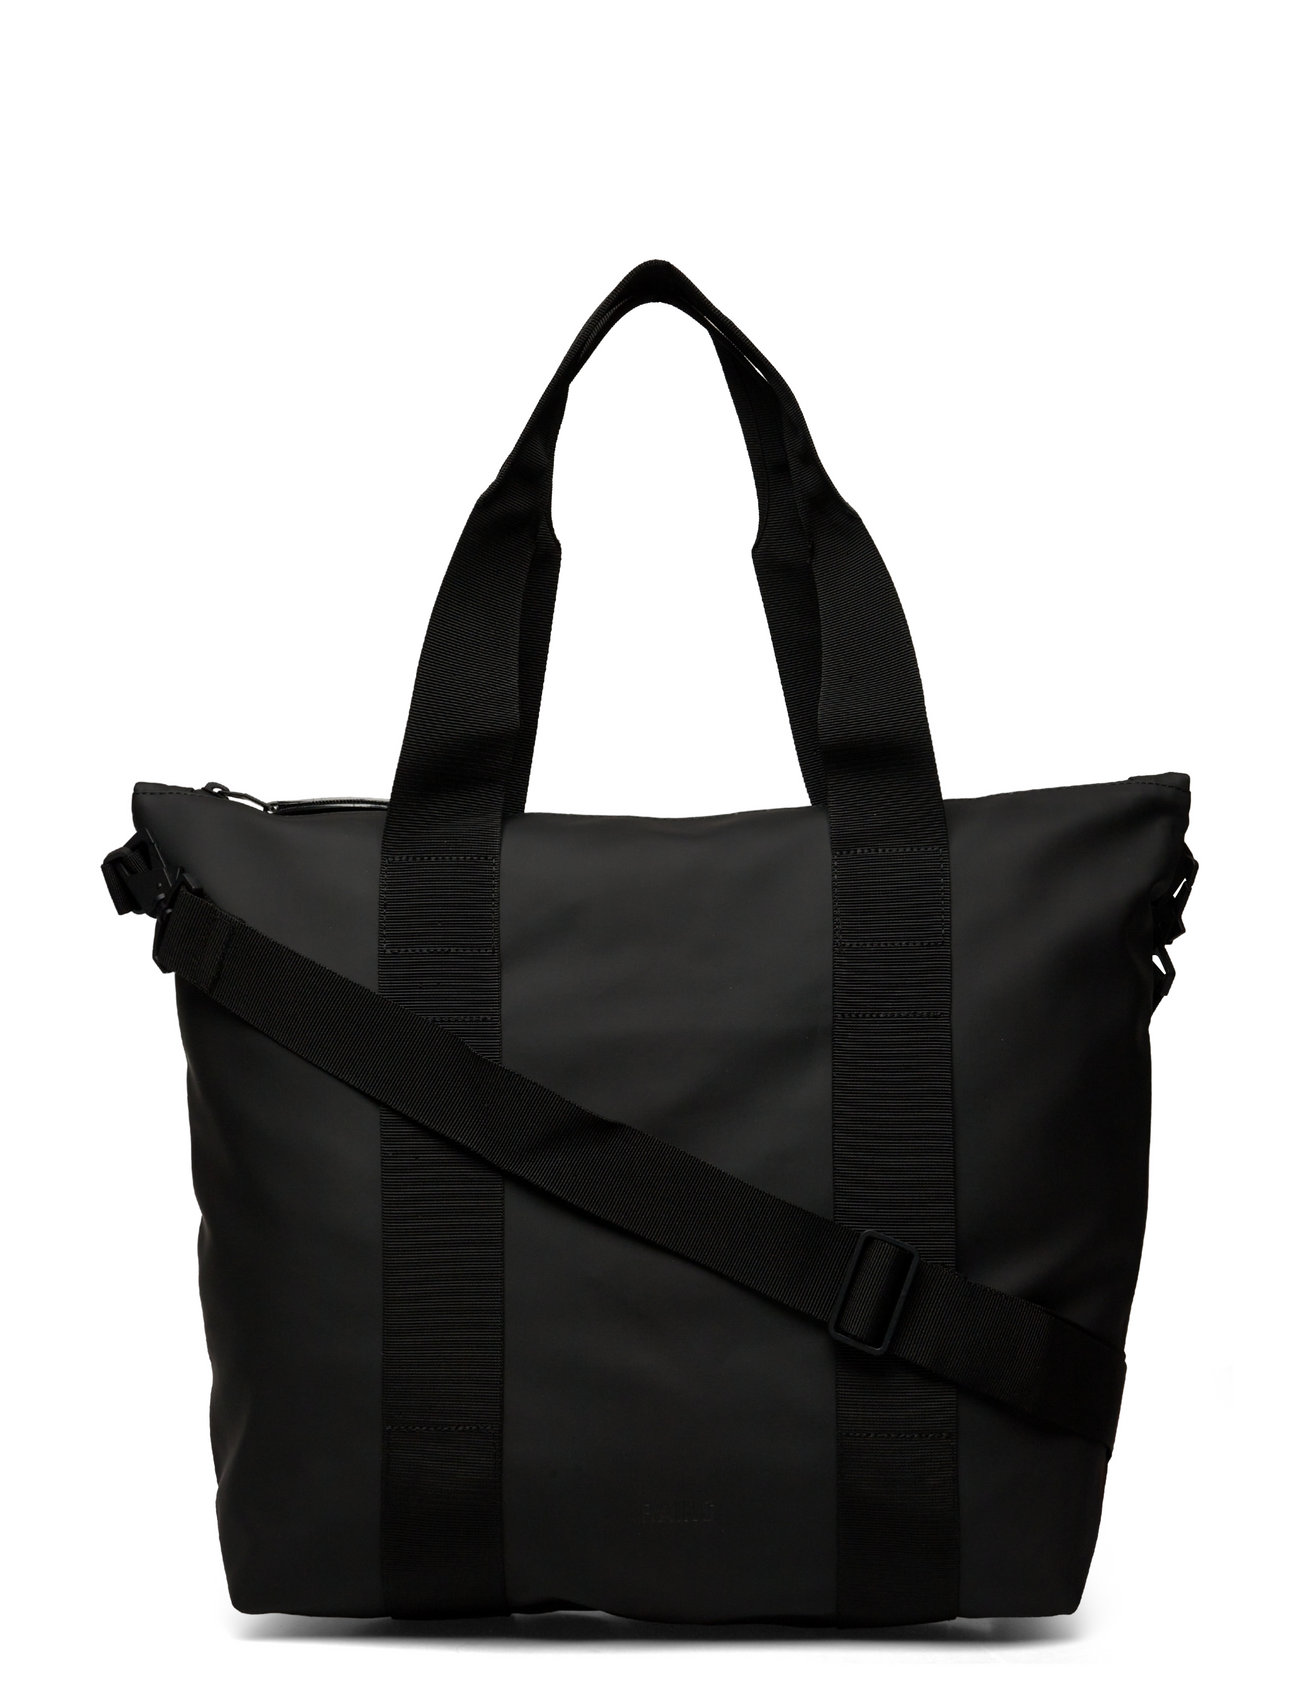 Rains Tote Bag Mini W3 (01 Black/Svart) - 699 kr | Boozt.com